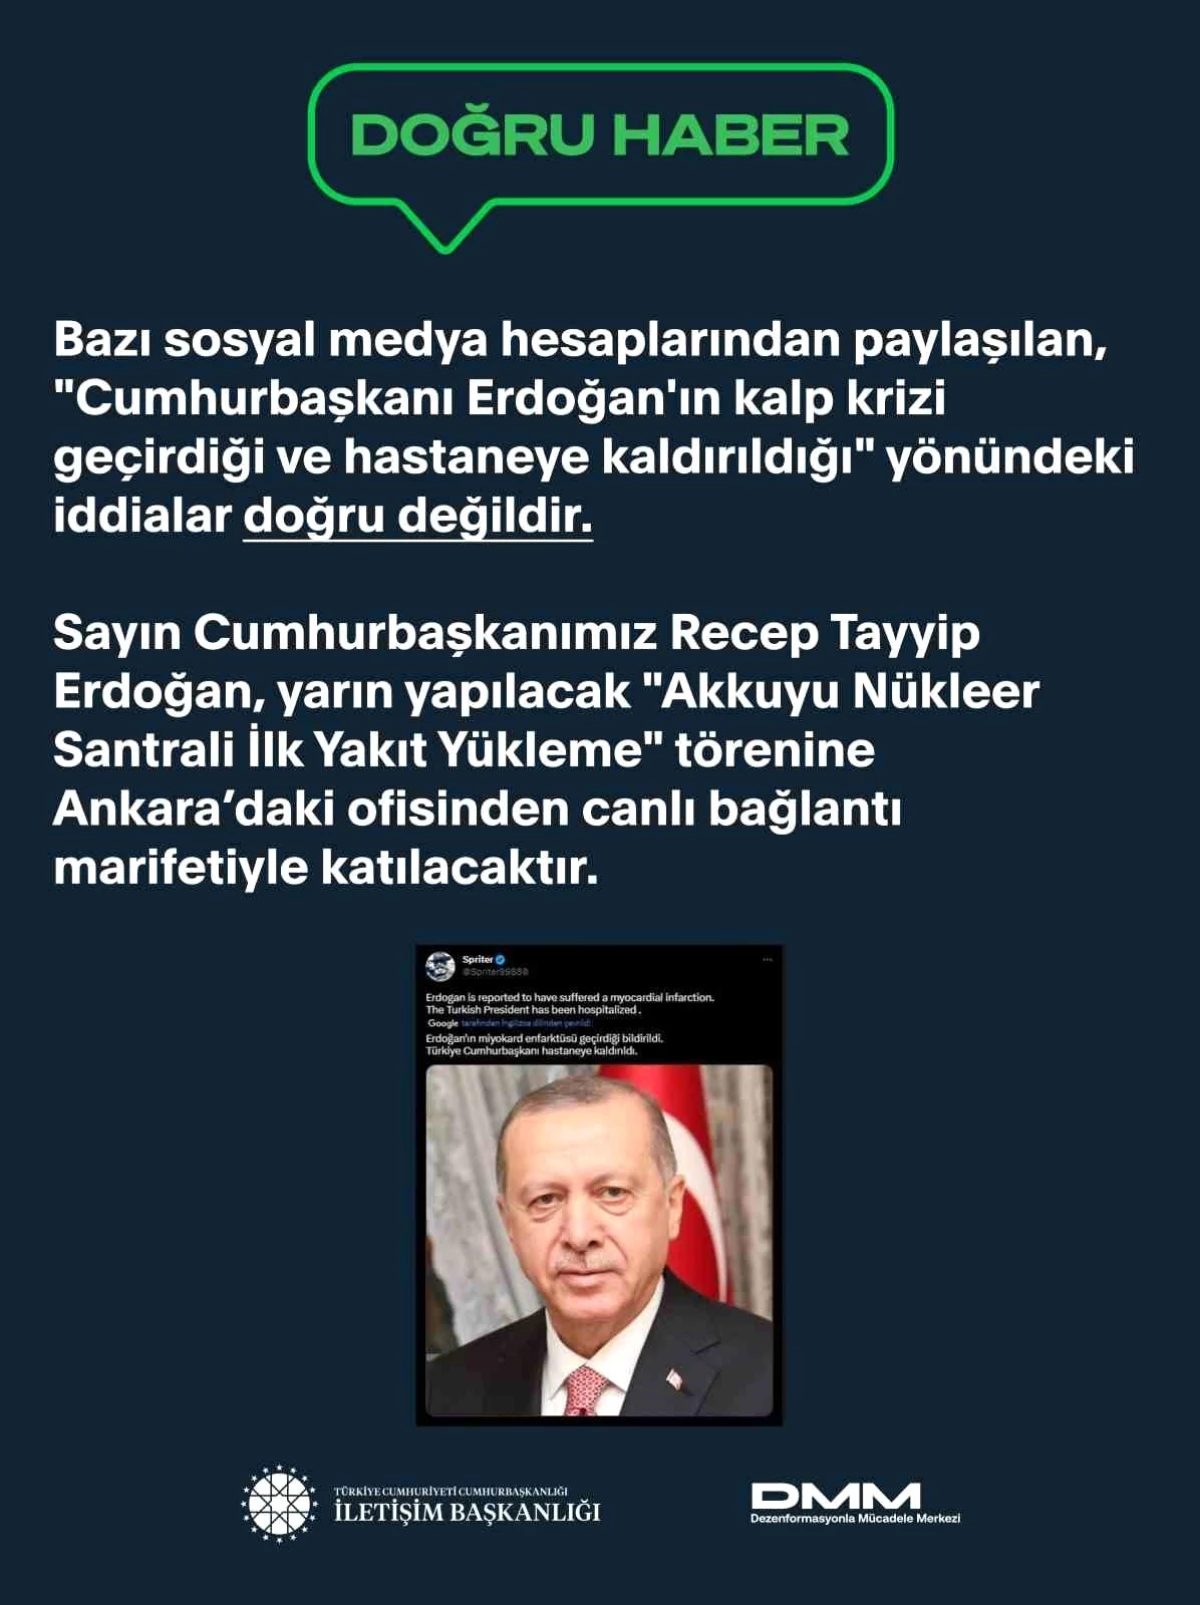 Cumhurbaşkanı Erdoğan\'ın kalp krizi geçirdiği iddiaları doğru değil